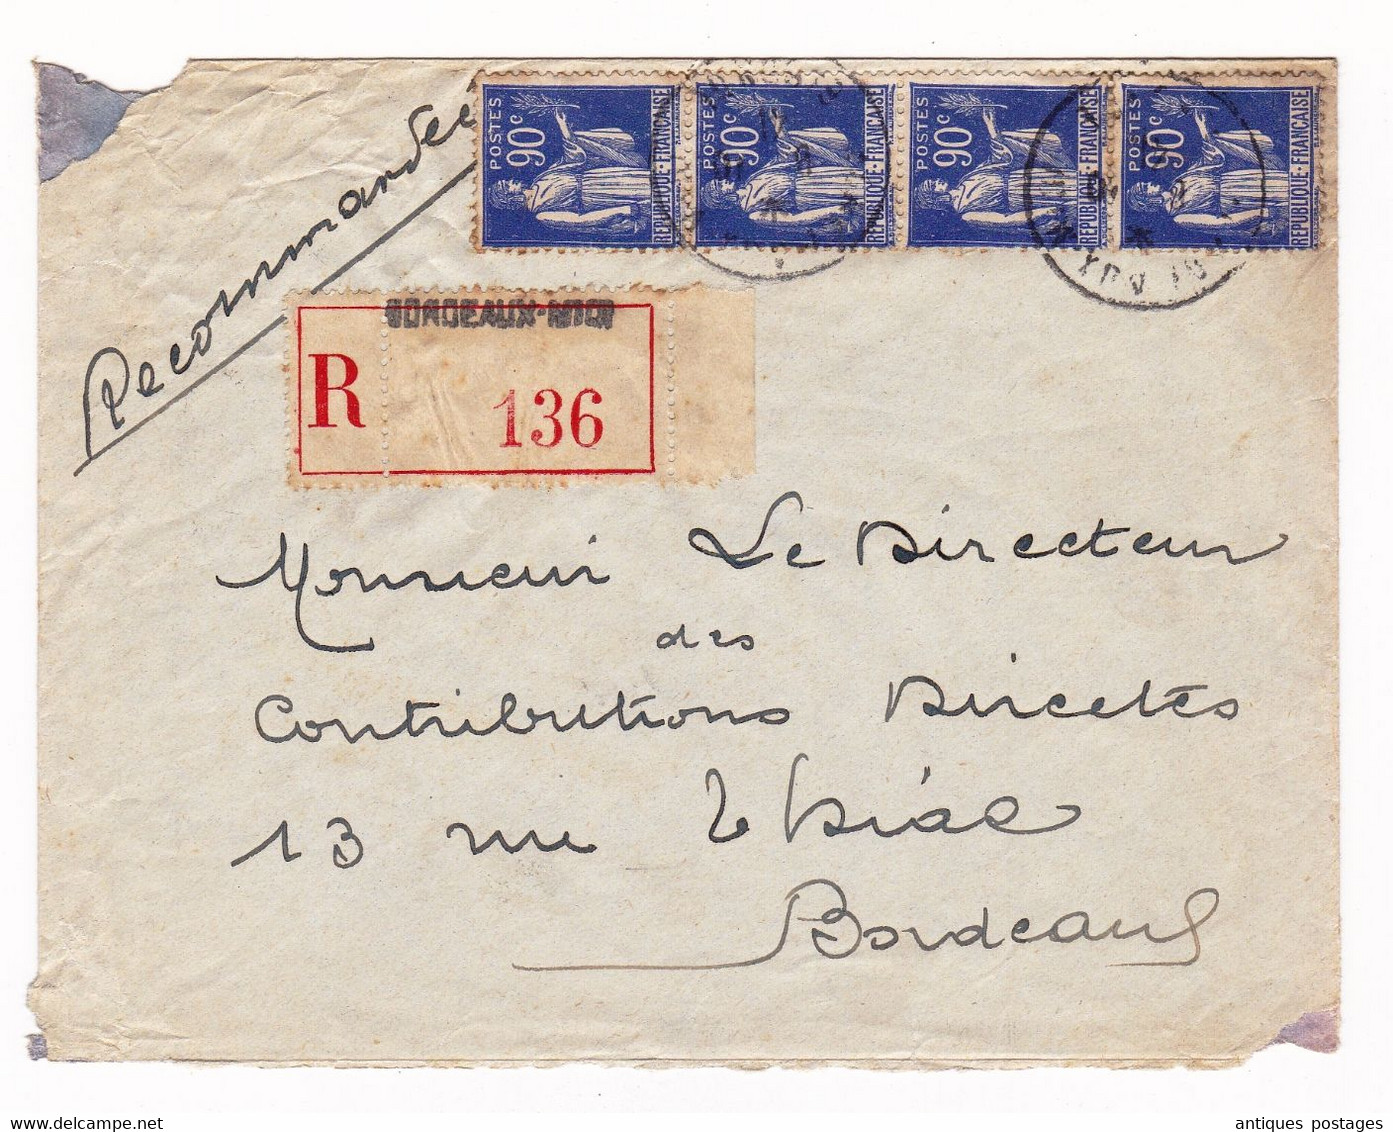 Lettre 1941 Recommandé Bordeaux Gironde Bande De 4 Paix 90c - 1932-39 Paix